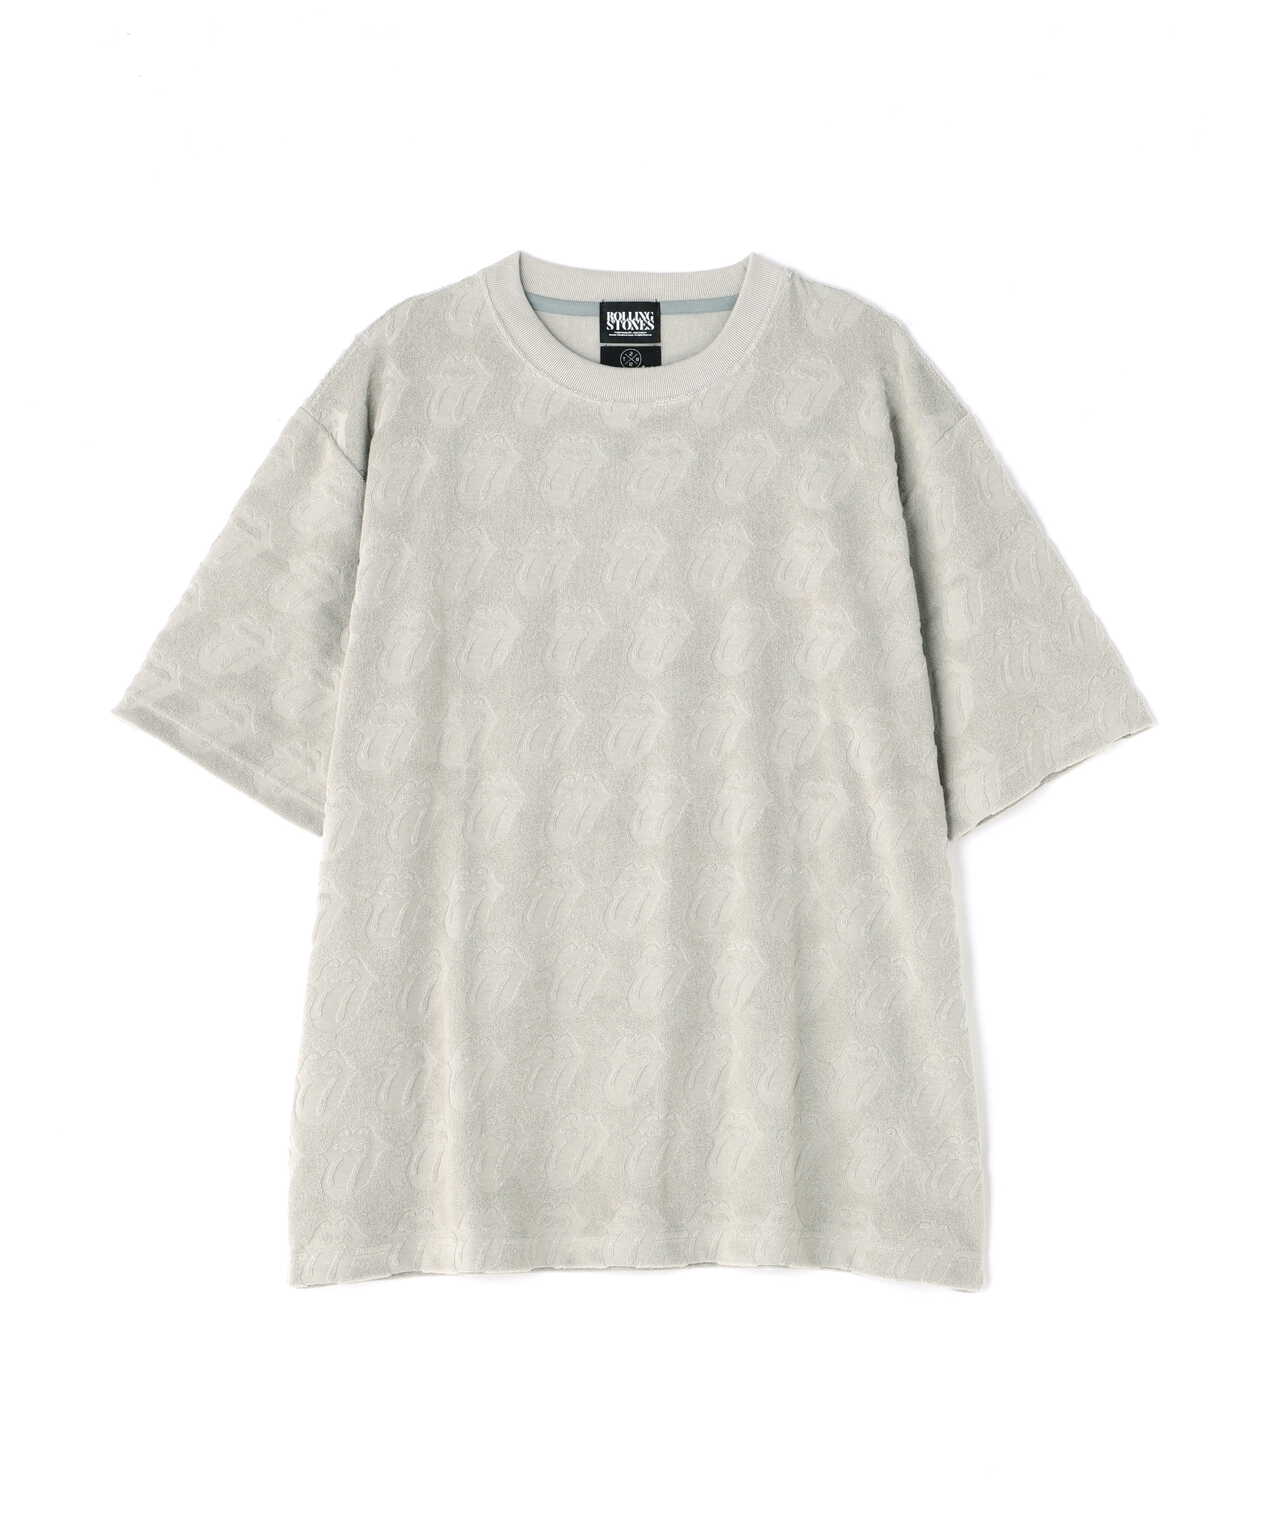 メンズSURT WHITEシャツ - mirabellor.com